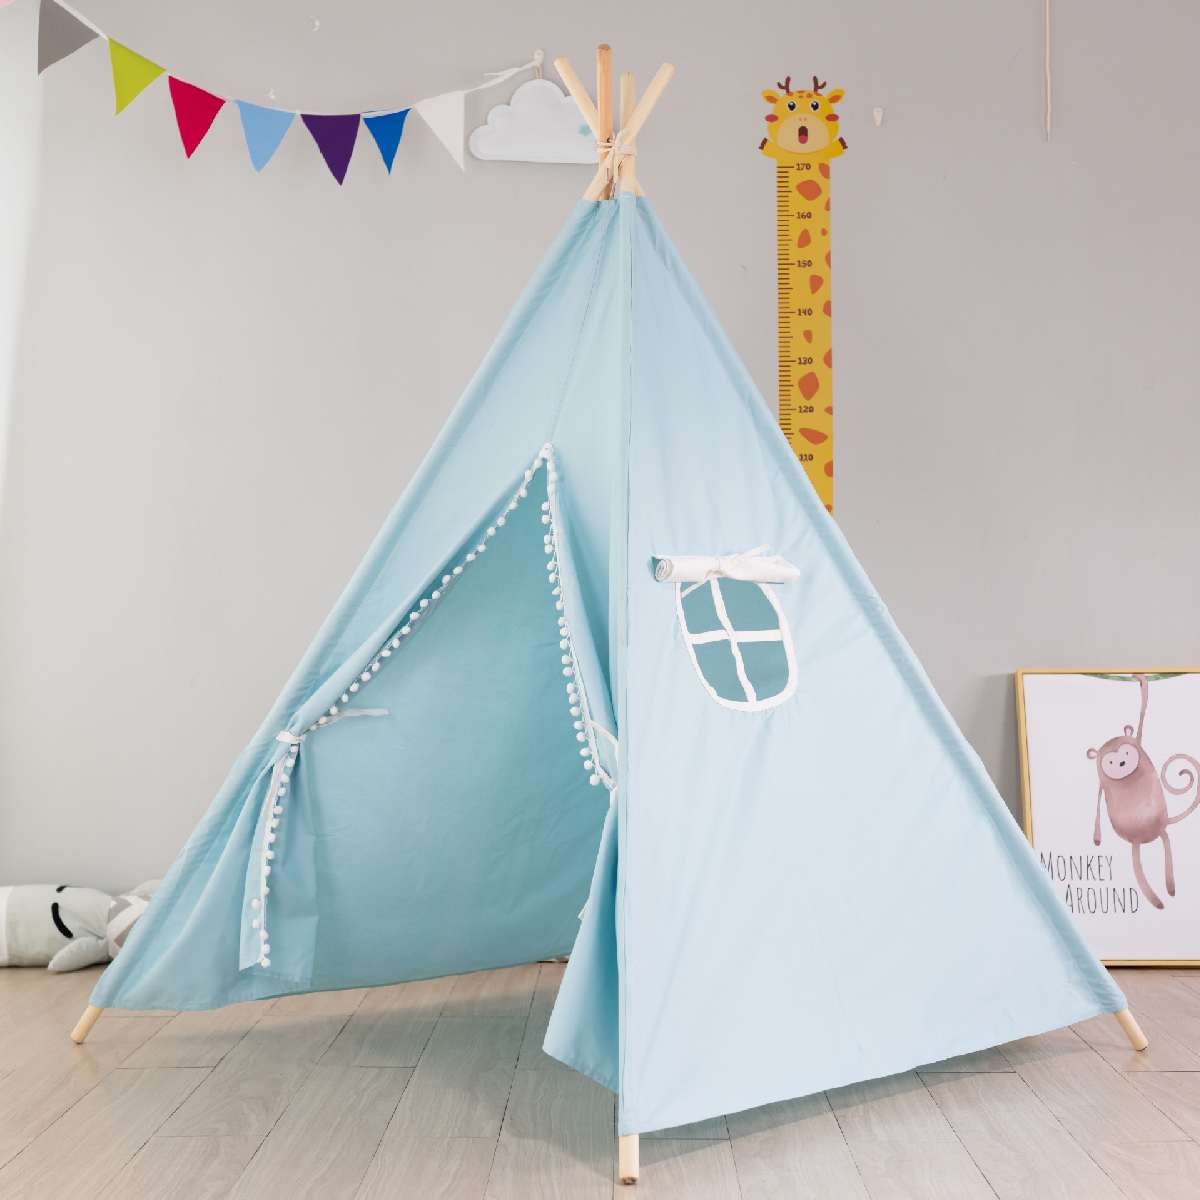 Draagbare Kinderen Tenten Teepee Tent Voor Kinderen Spelen Huis Wigwam Voor Kinderen Tipi Infantil Kids Tent